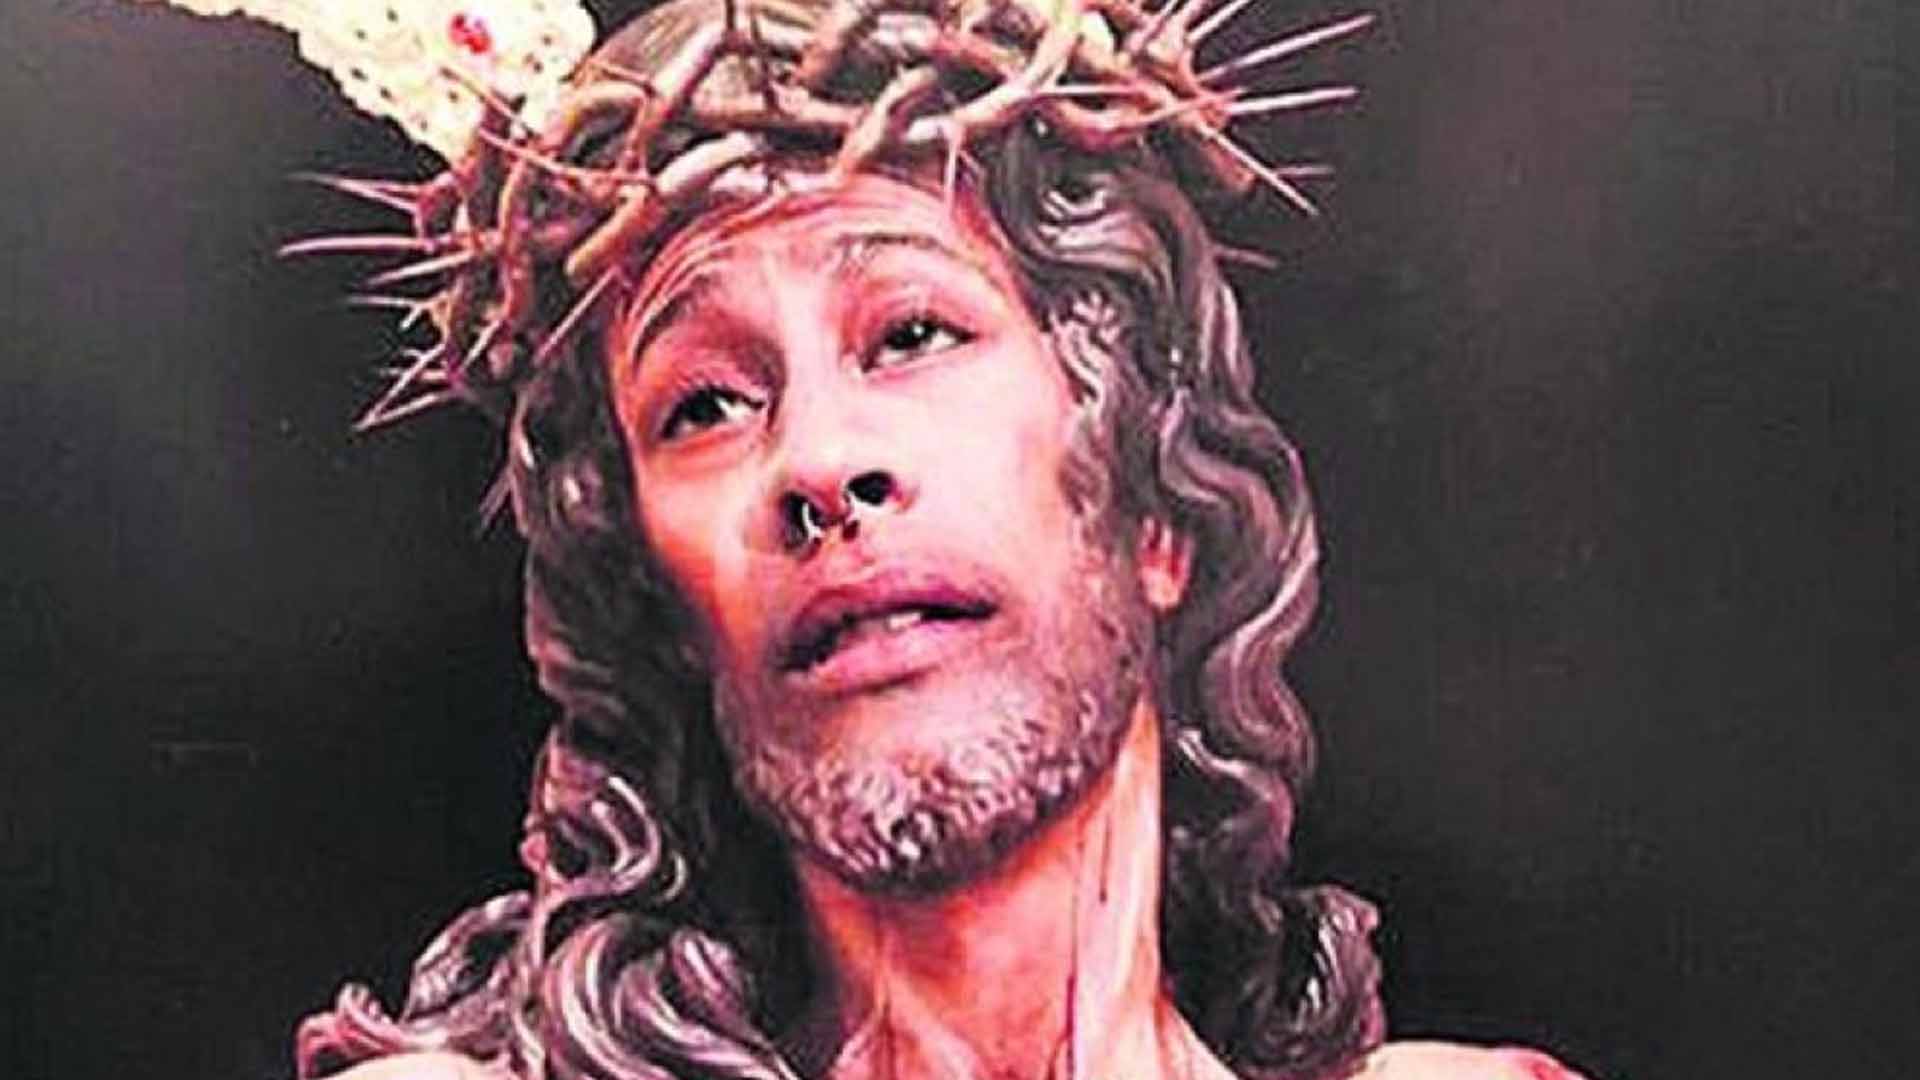 Condenan a pagar 480 euros a un joven por hacer un fotomontaje de Jesucristo